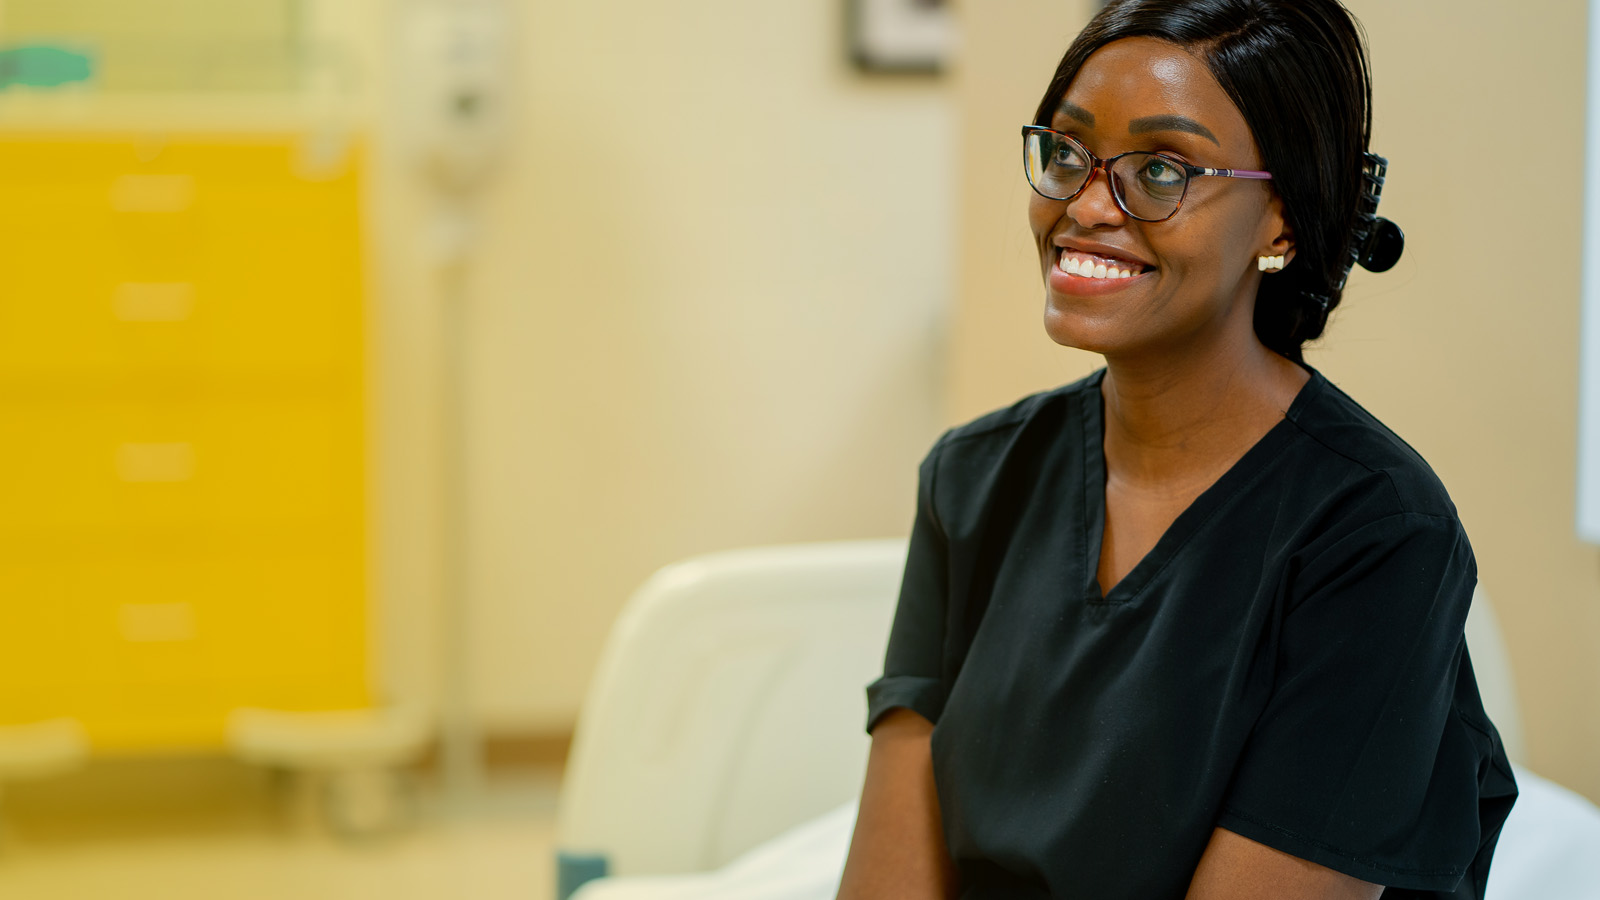 Nursing student smiling in black scrubs